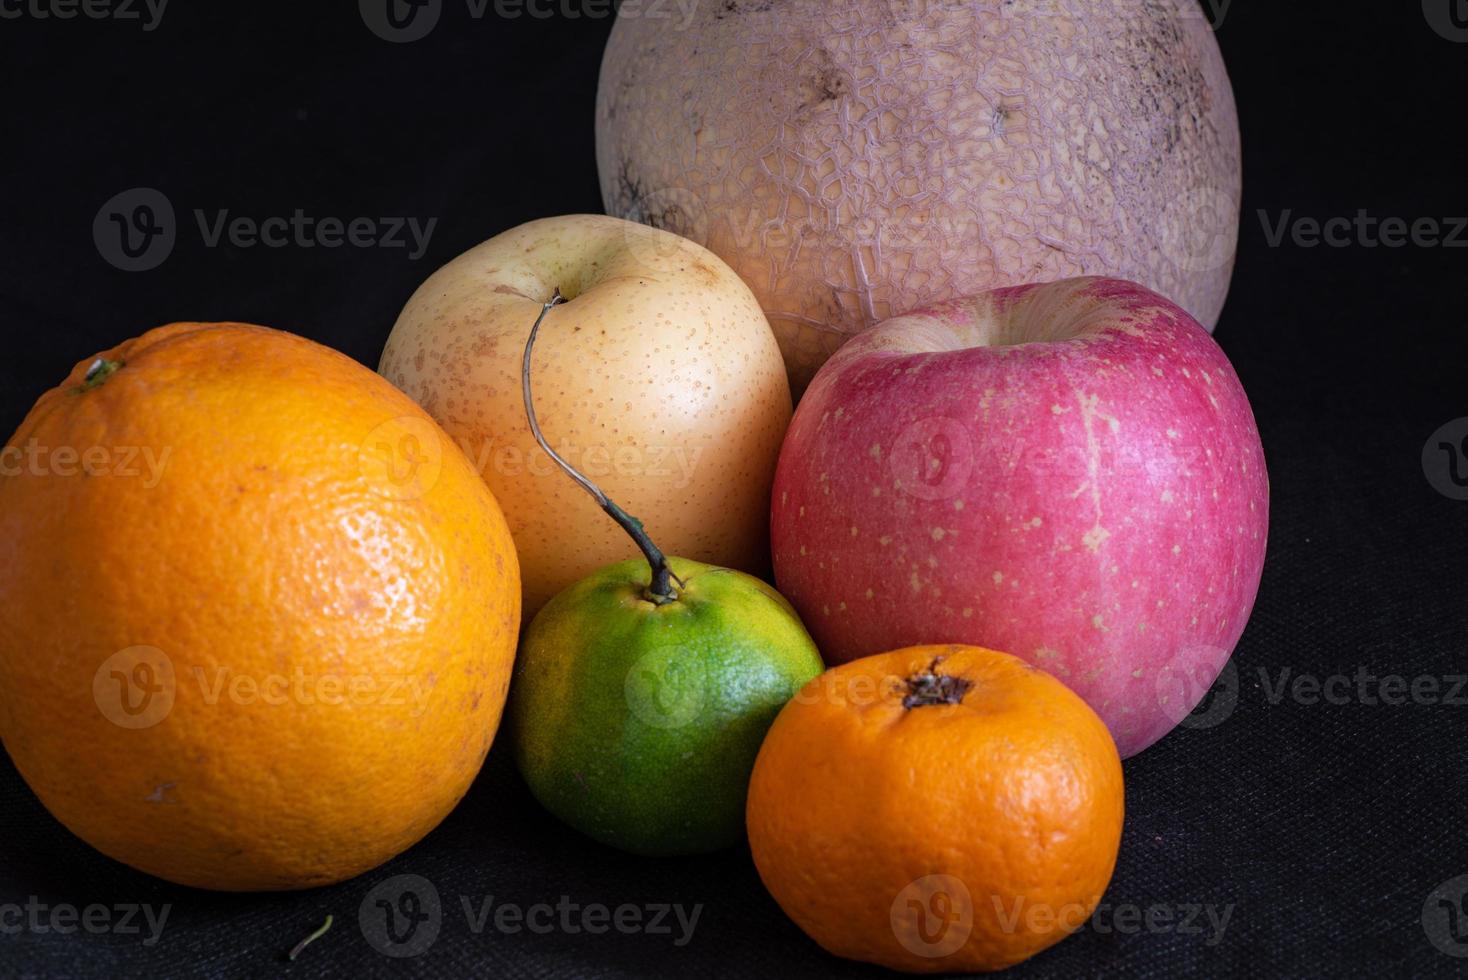 Früchte in schwarzem Hintergrund foto